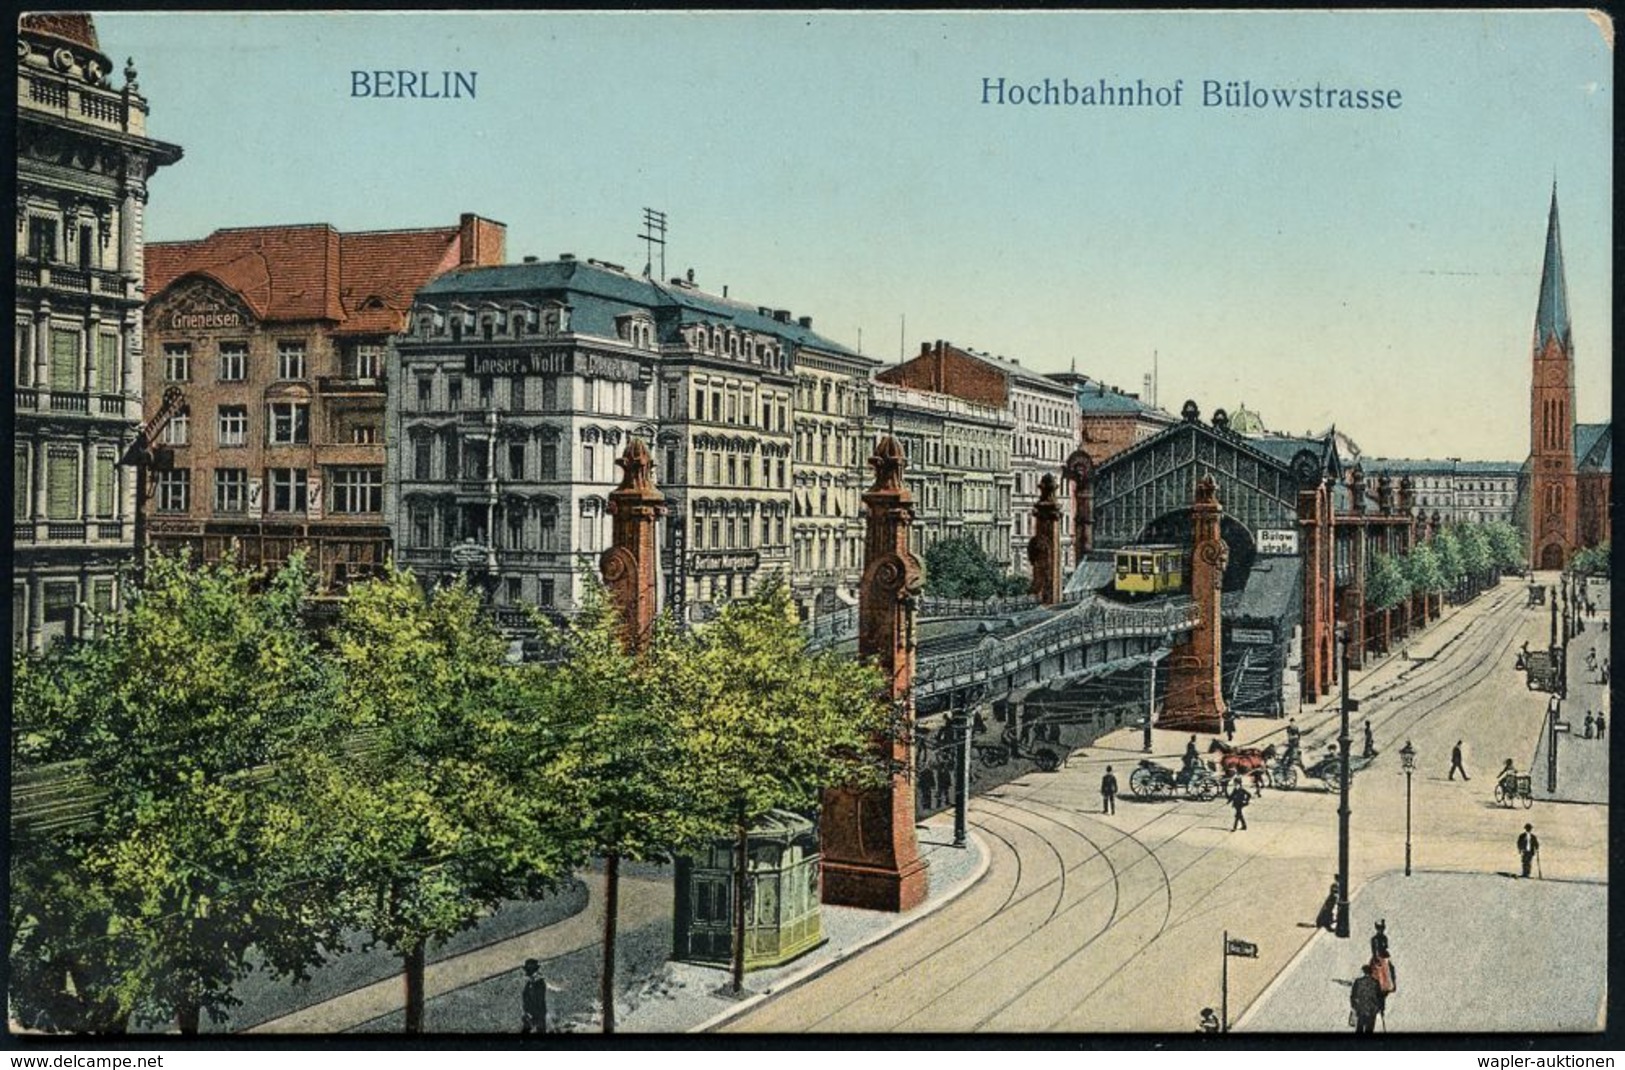 UNTERGRUNDBAHN /U-BAHN : Berlin-Schöneberg 1906/12 U-Bahnhof Bülowstraße, 5 Verschiedene Color-Foto-Ak., Meist Gebr. - Trains